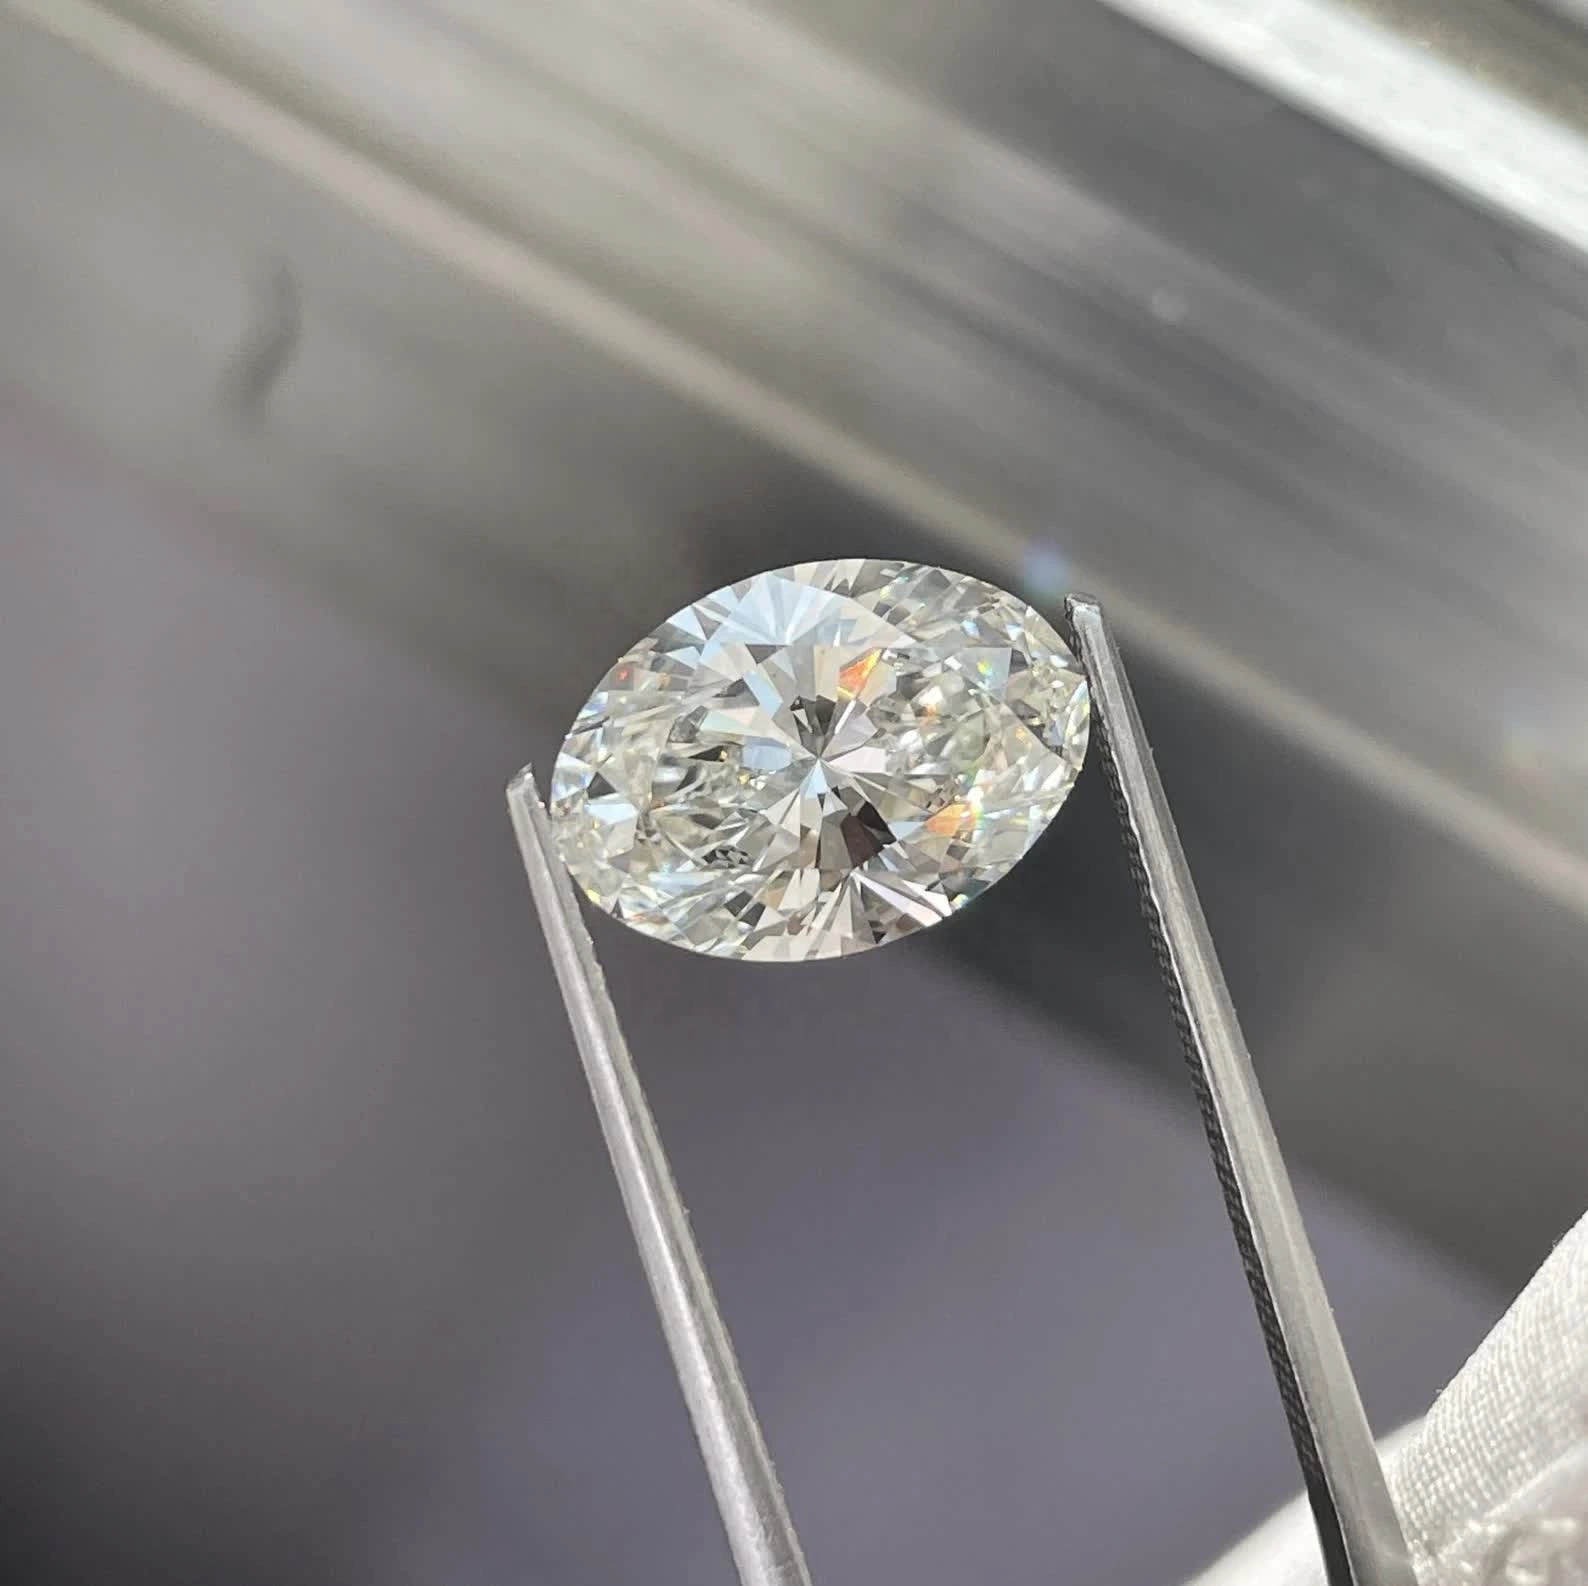 Synthétique en vrac CVD rugueux 3 carat couleur blanche avec IGI Certificat de laboratoire de diamants cultivés